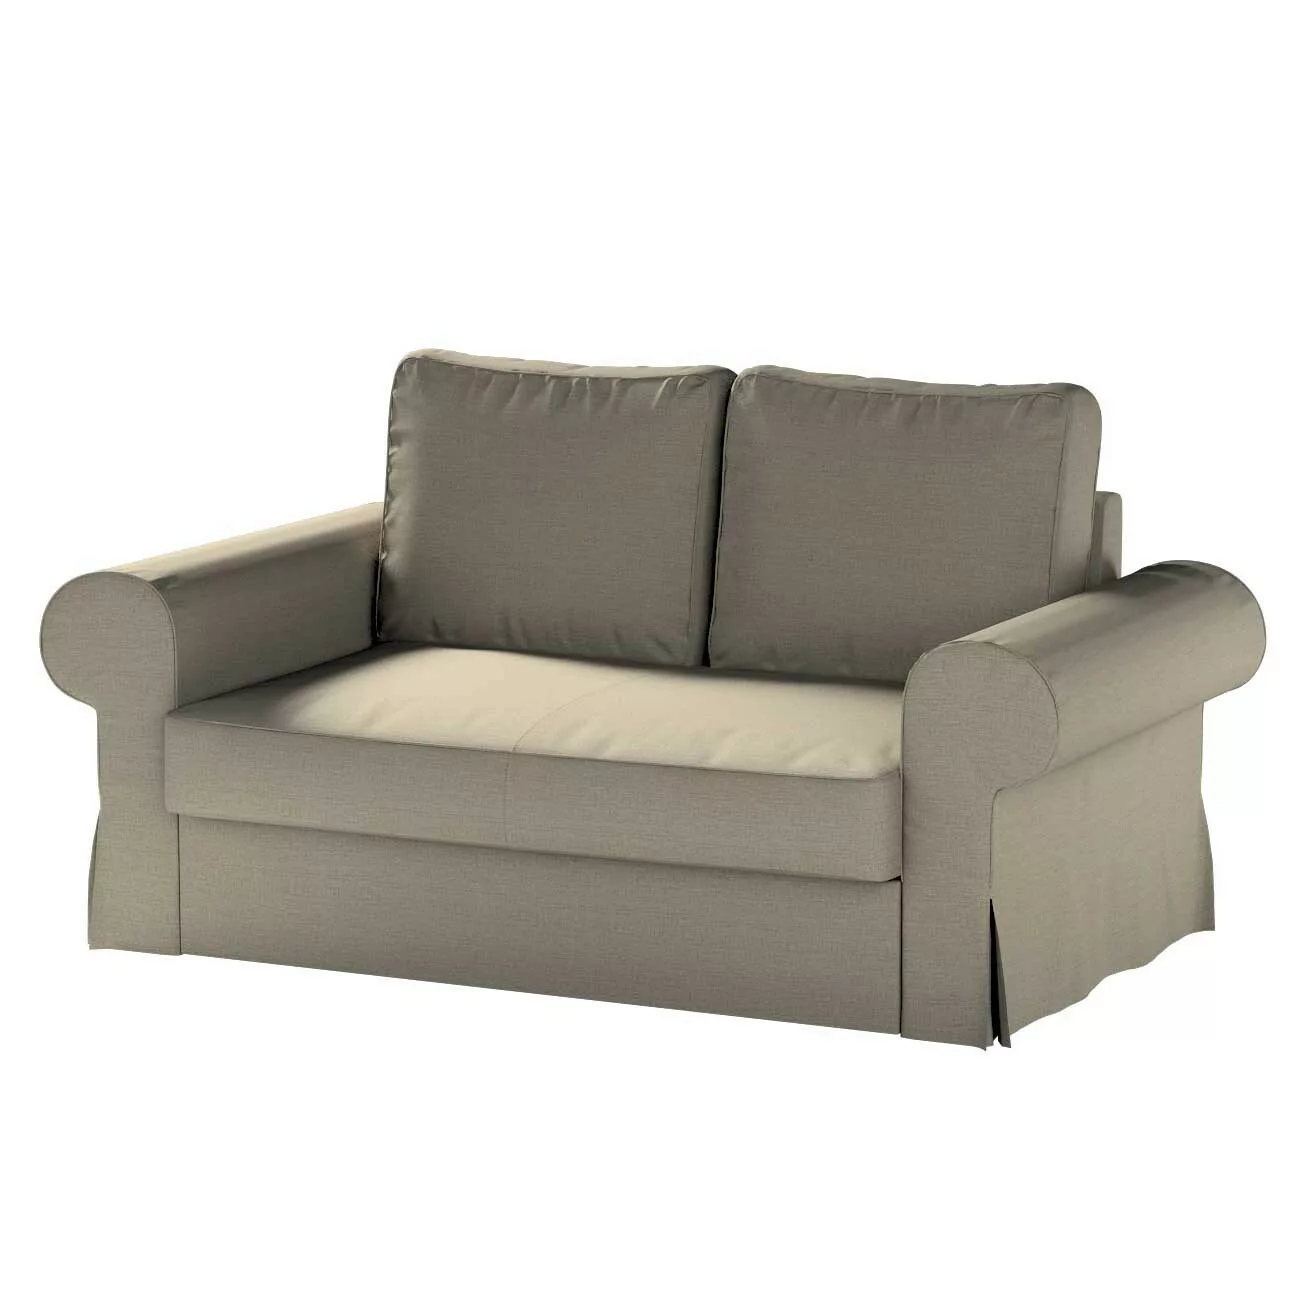 Bezug für Backabro 2-Sitzer Sofa ausklappbar, beige-grau, Bezug für Backabr günstig online kaufen